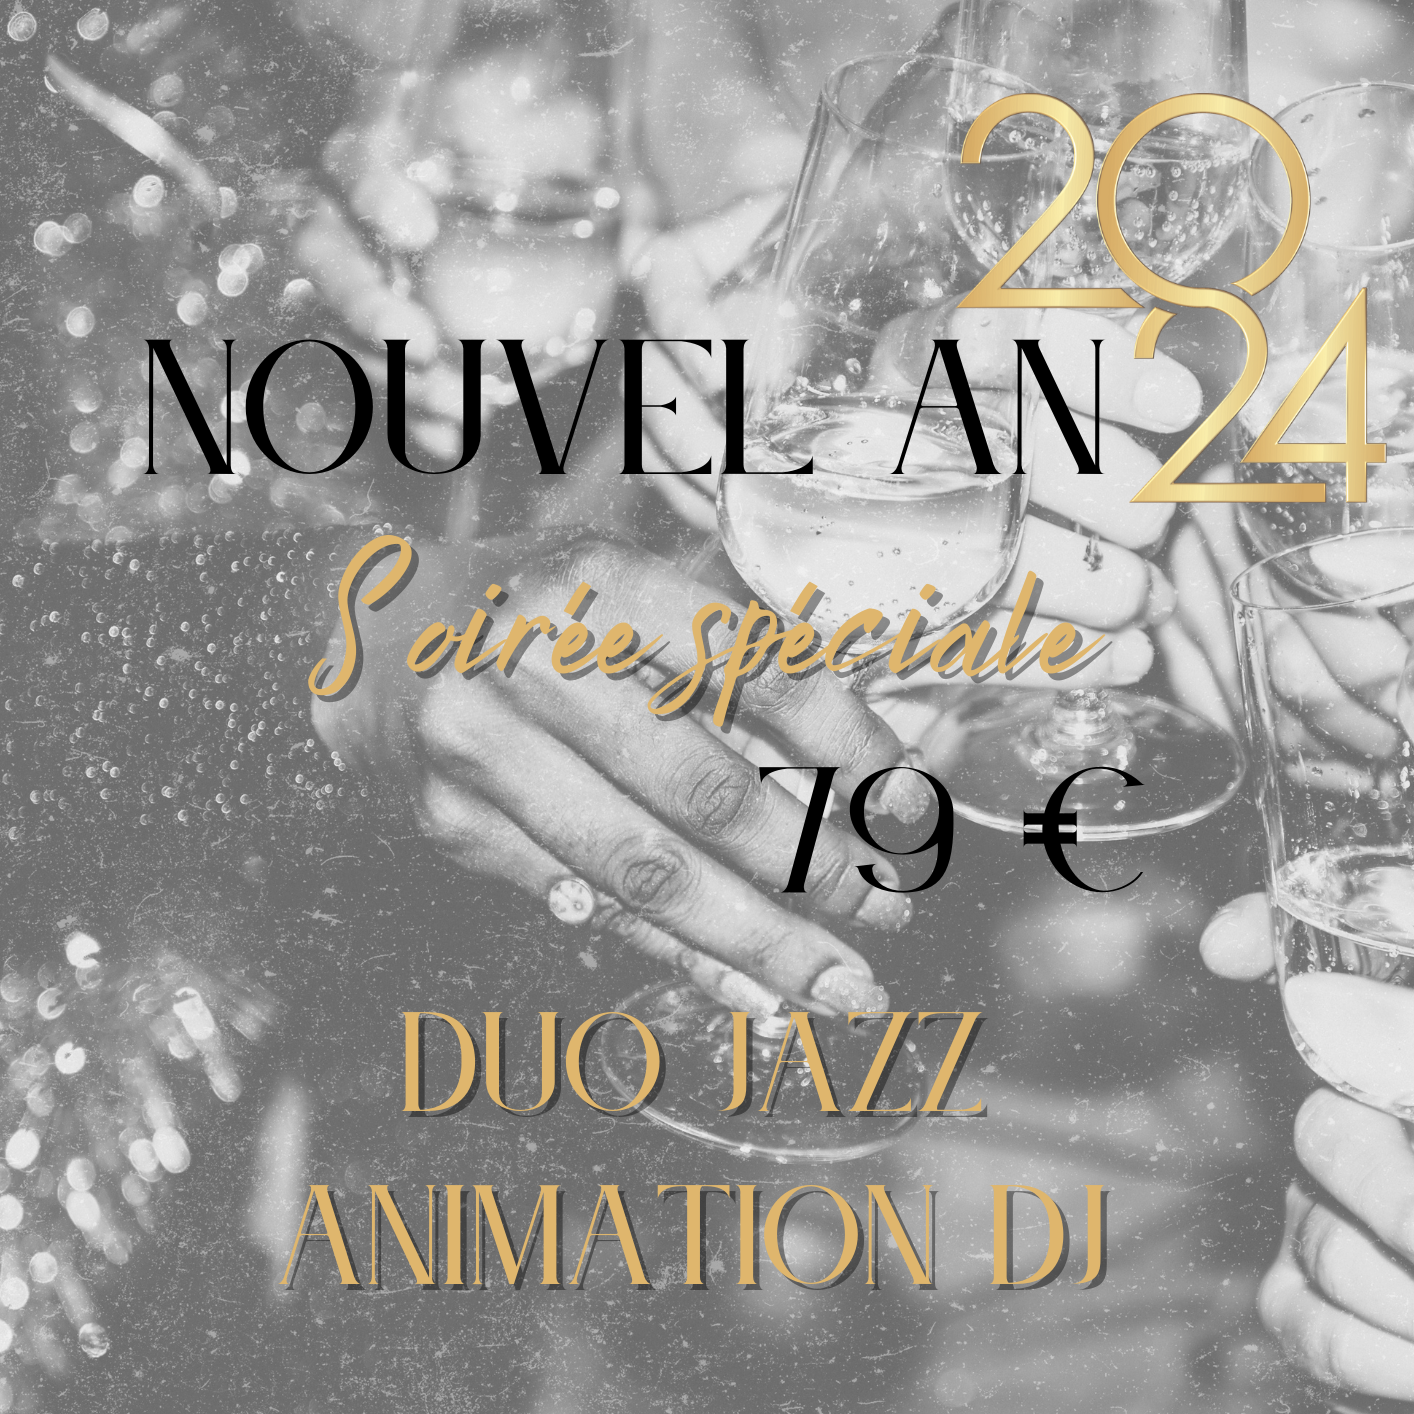 New Year 2 uai - Le Moulin d'Orgemont